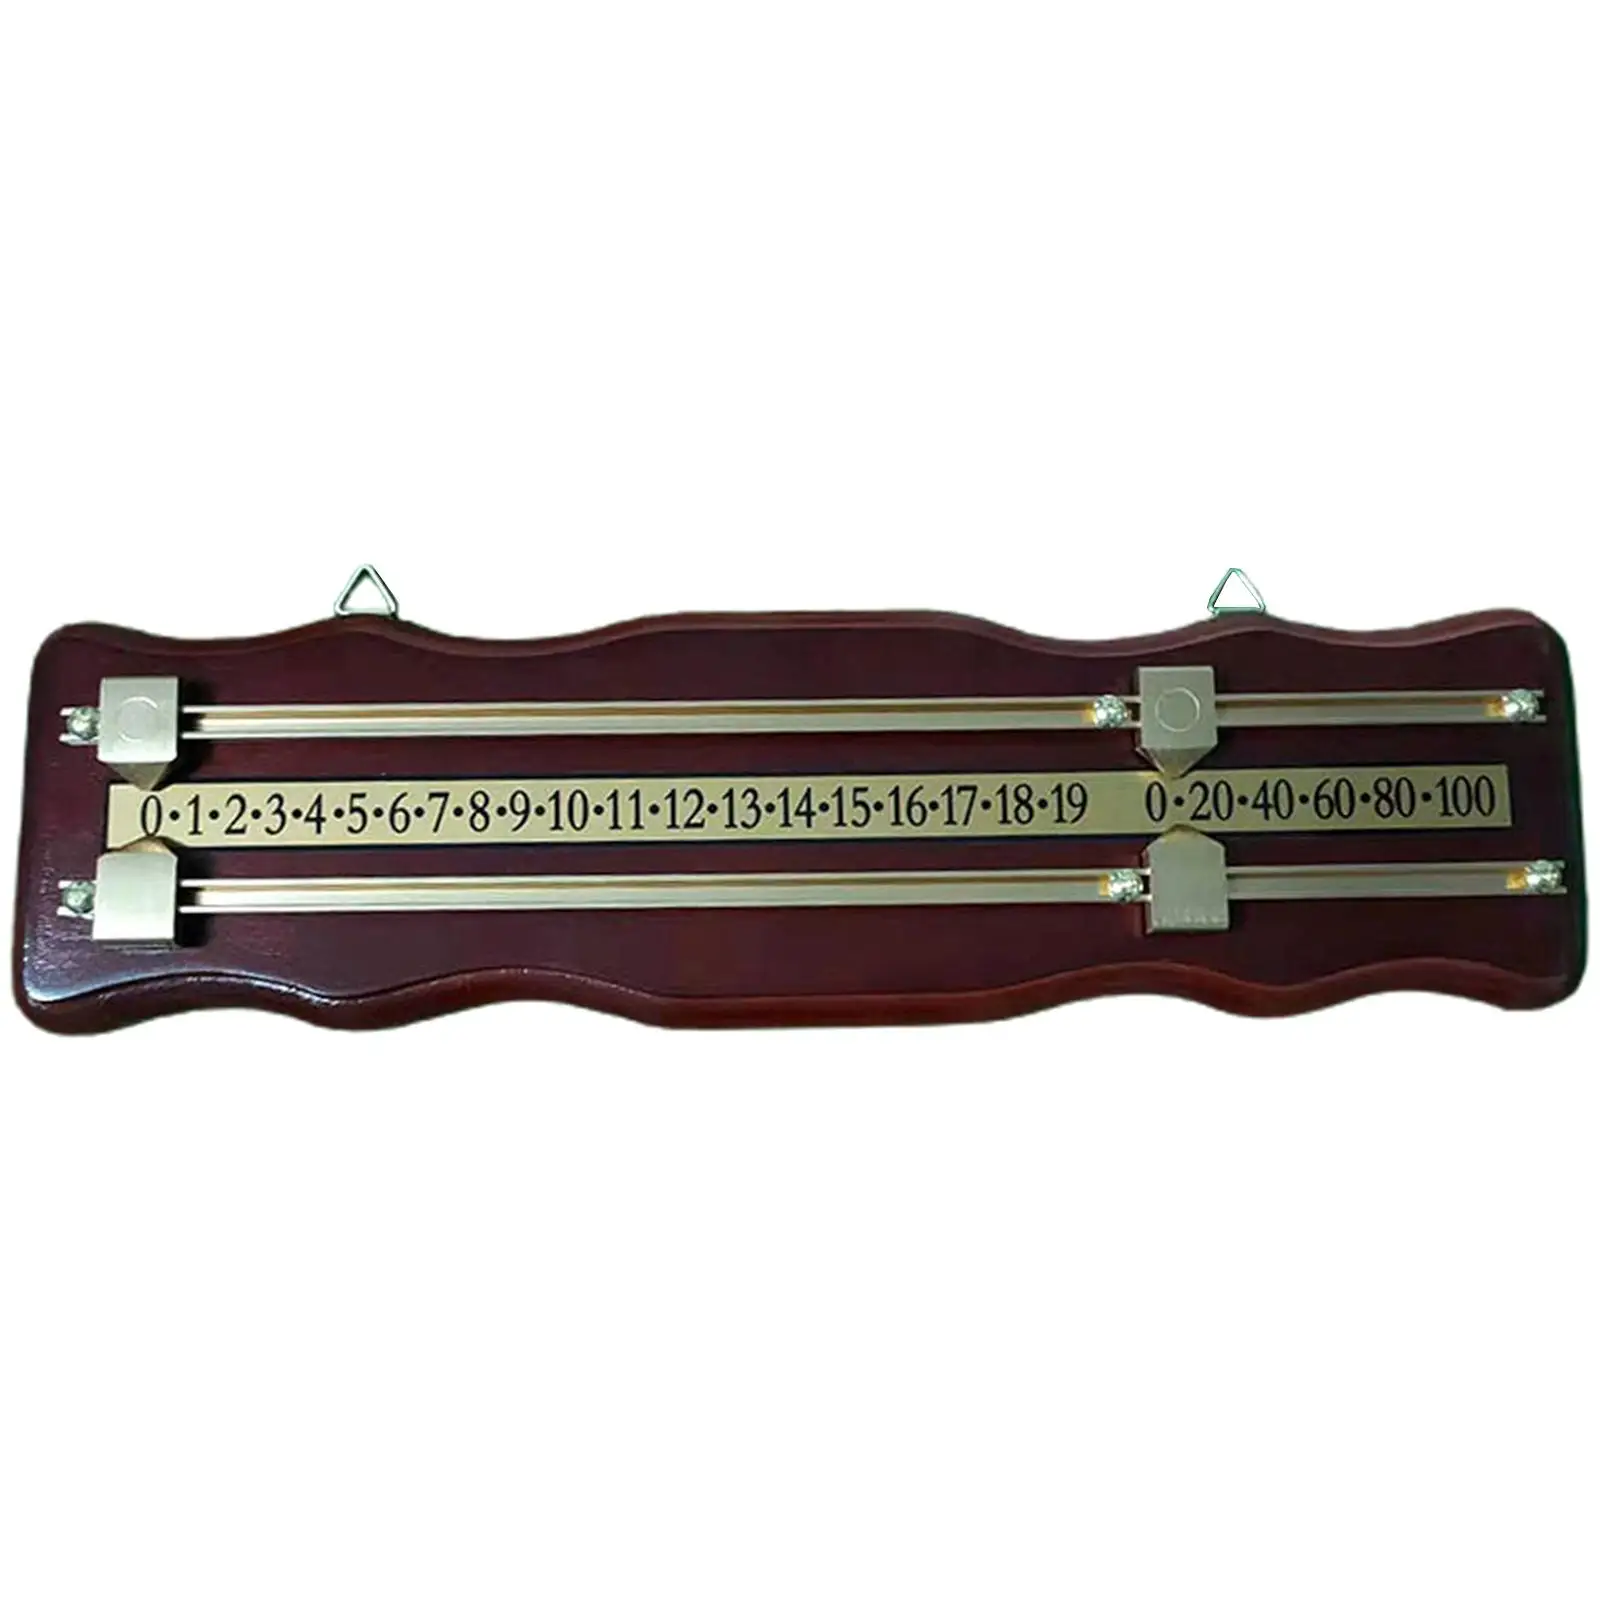 Wood Snooker Billiard Score Board Scoring Device Shuffleboard Scoreboard